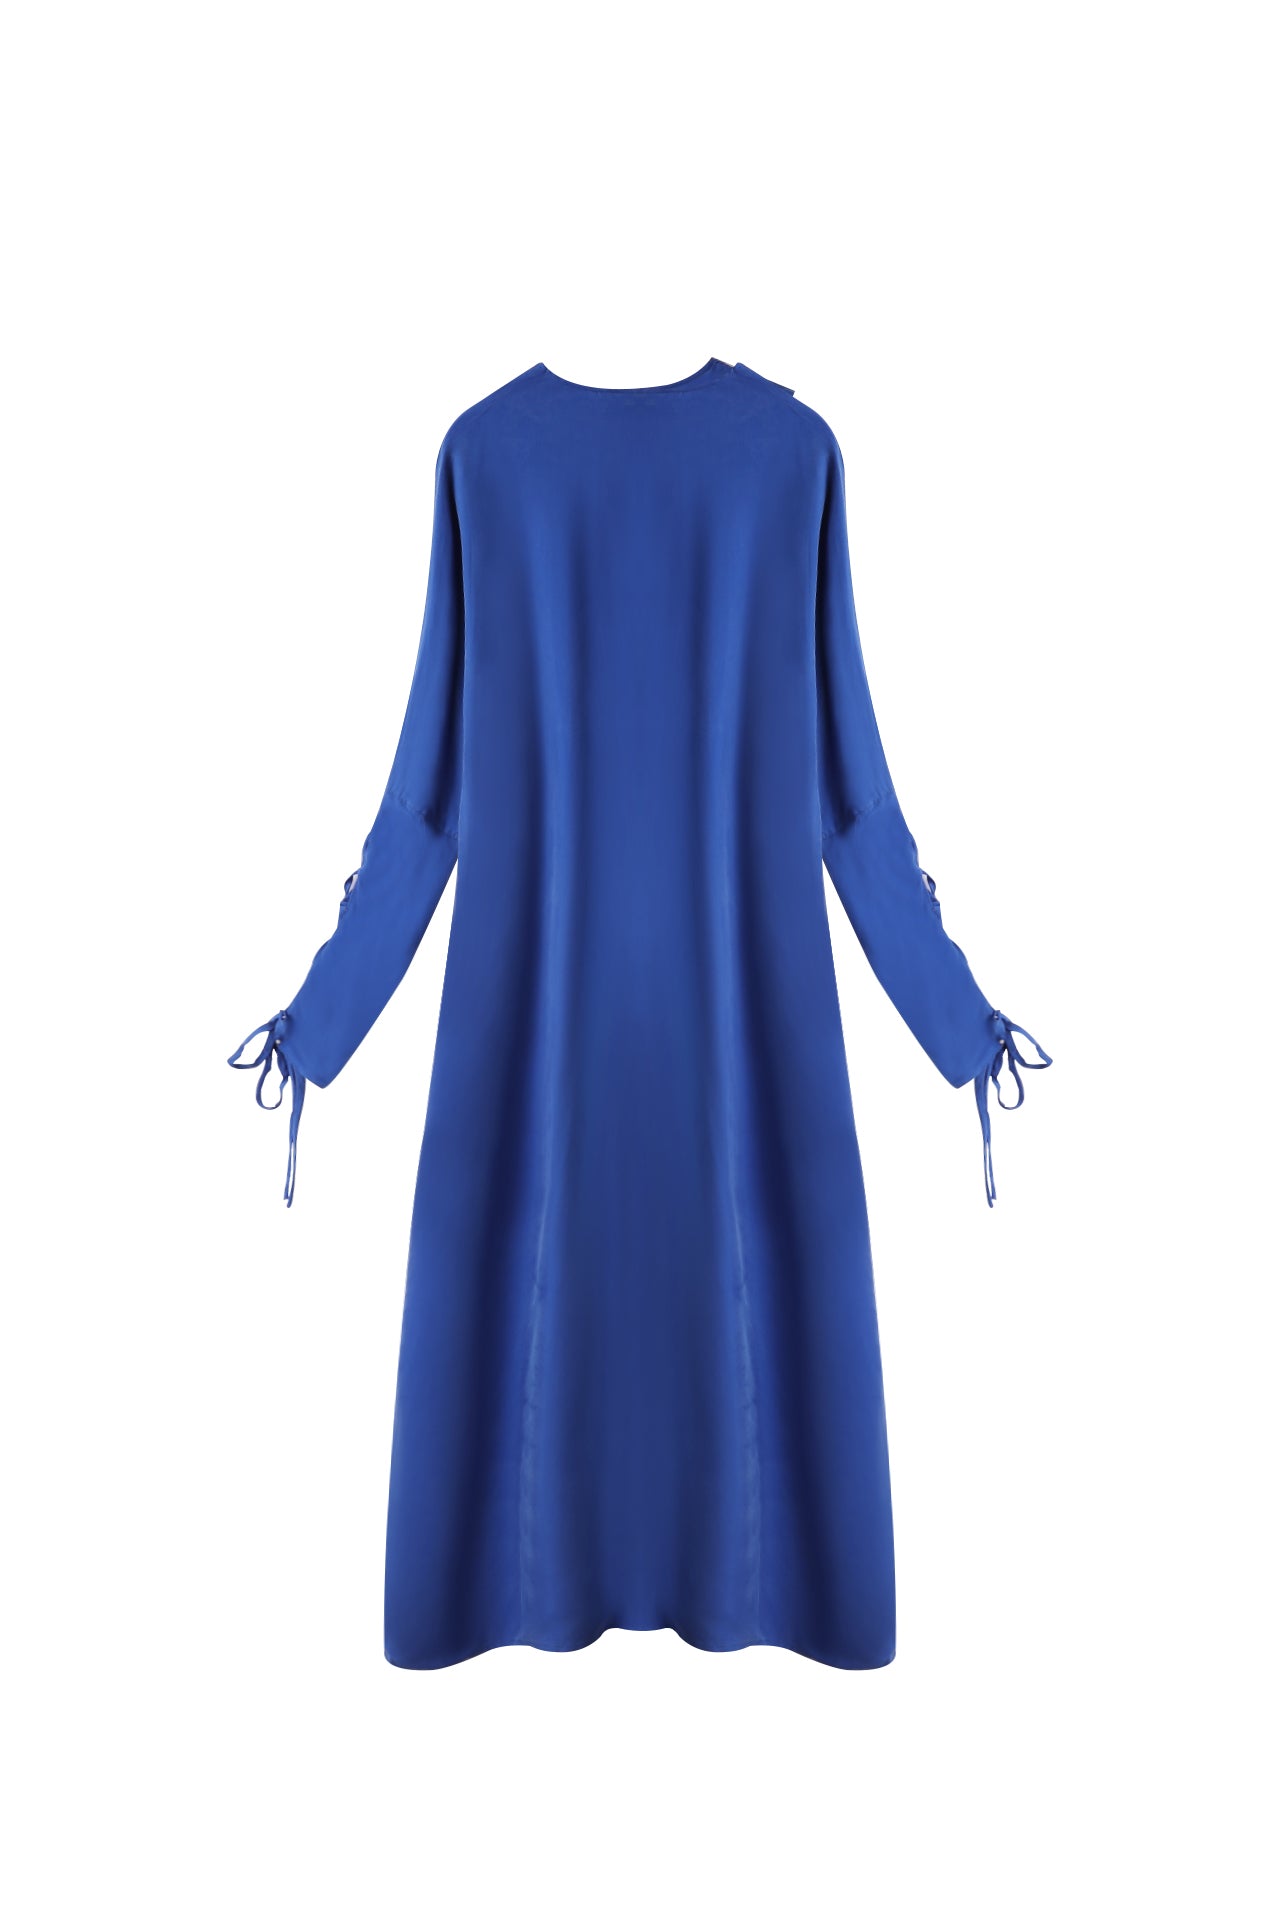 Blue Lace Sleeve Abaya